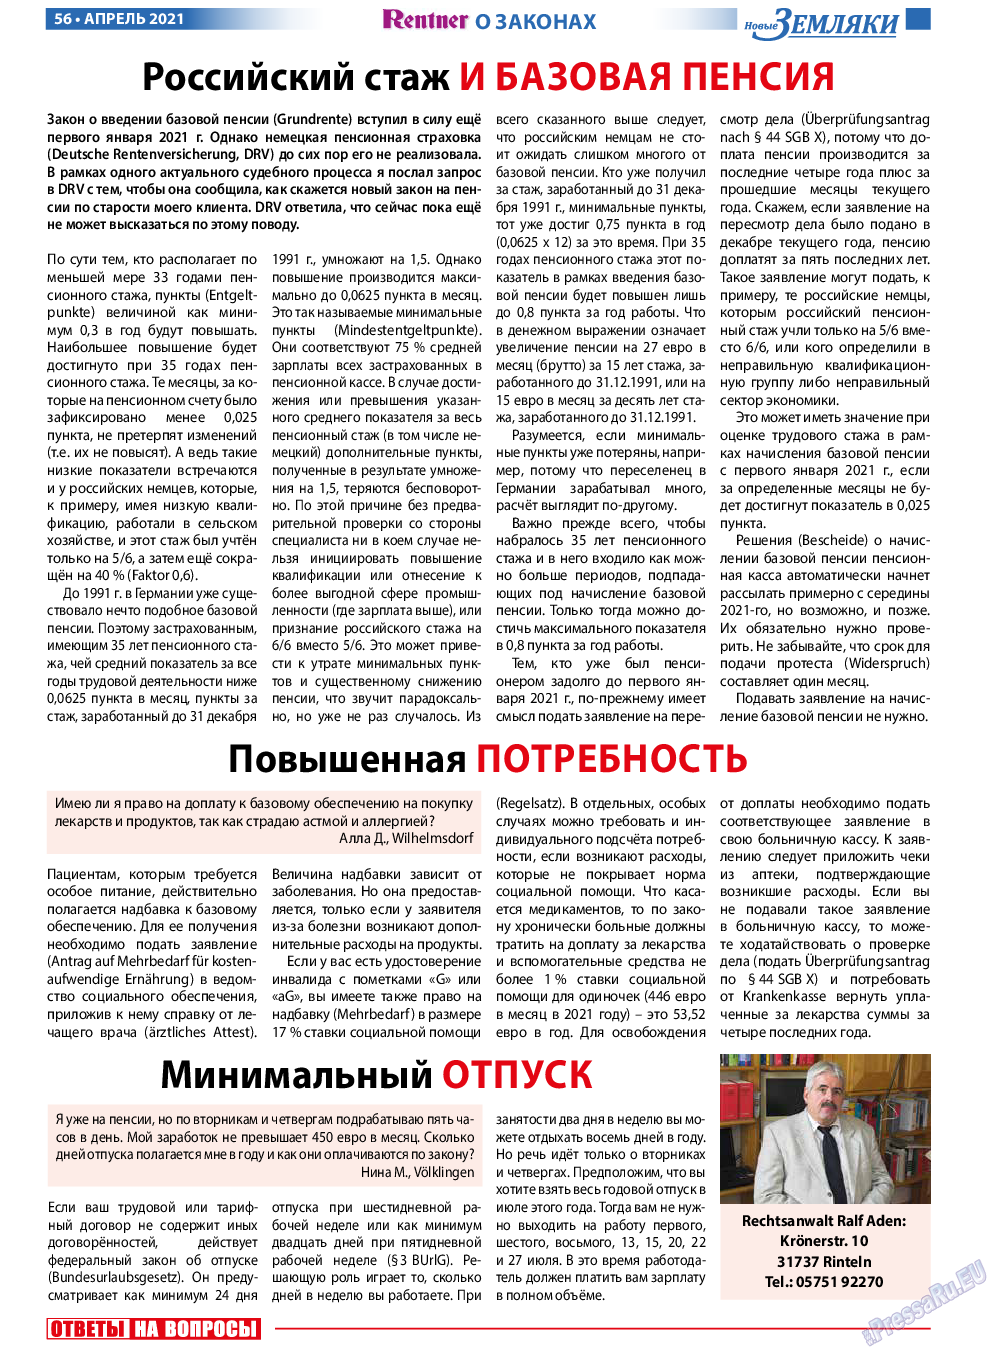 Новые Земляки, газета. 2021 №4 стр.56